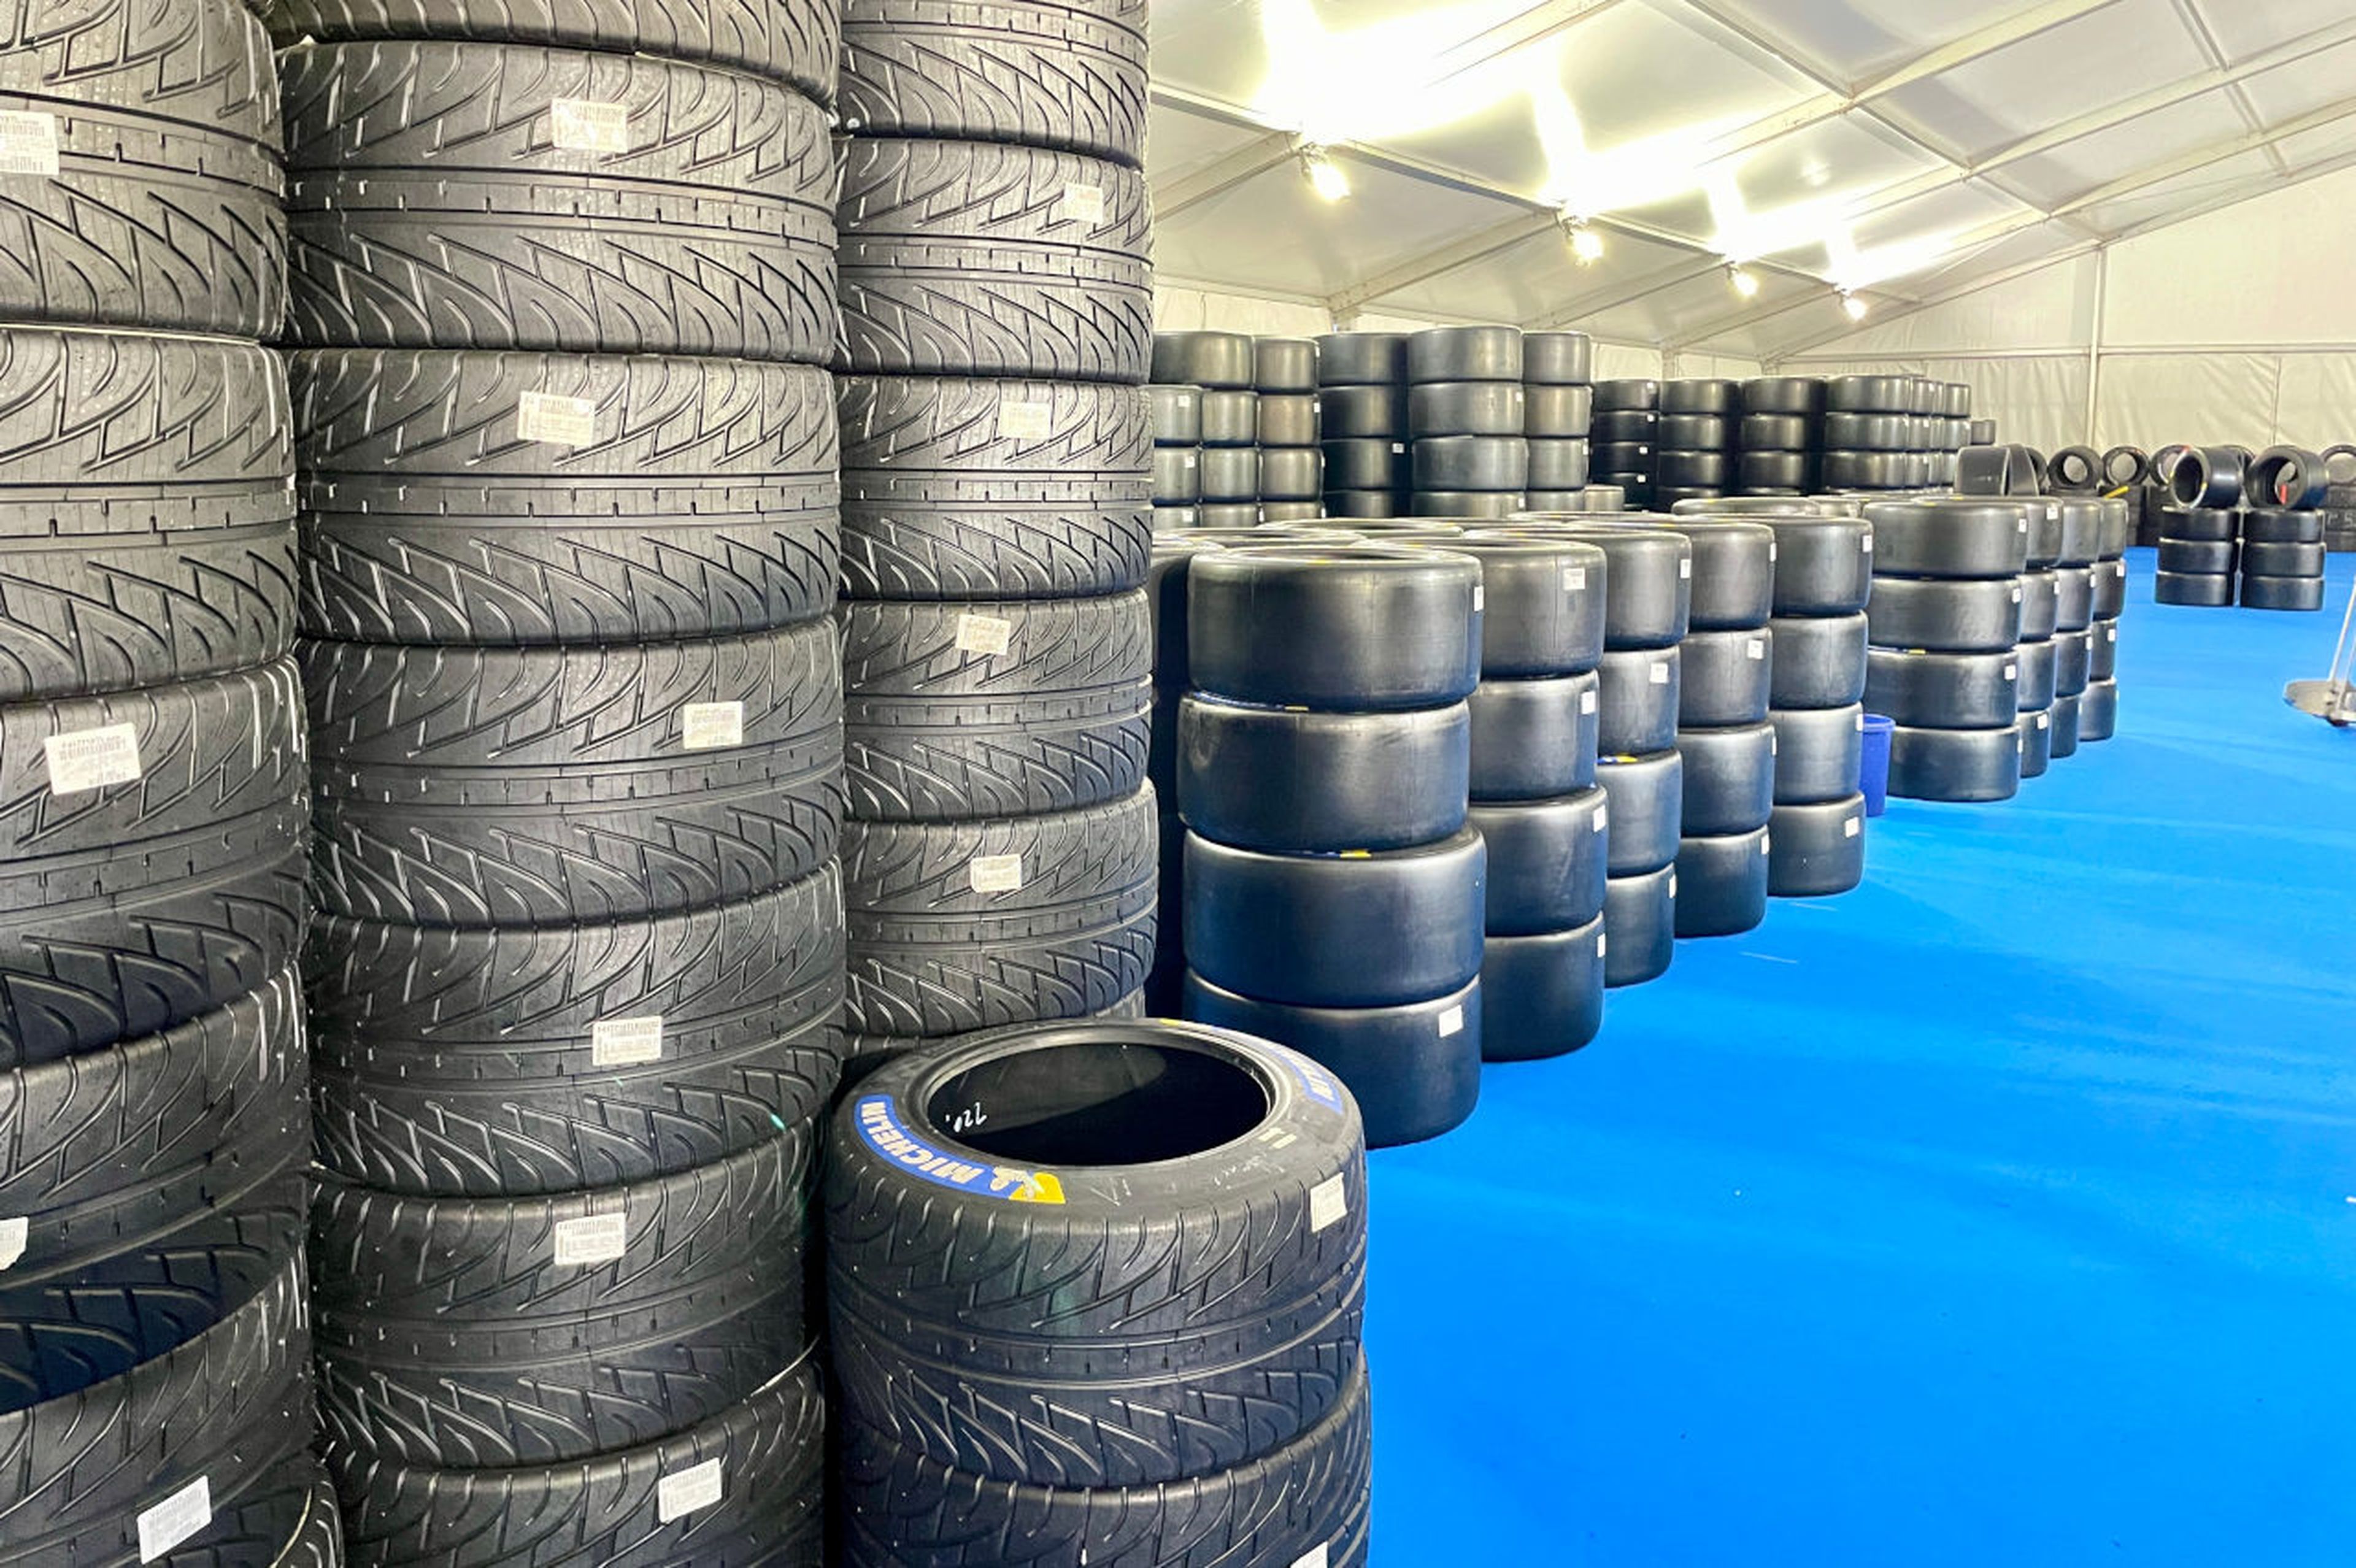 Almacén de neumáticos Michelin, proveedor de hypercar como los Toyota, en Le Mans